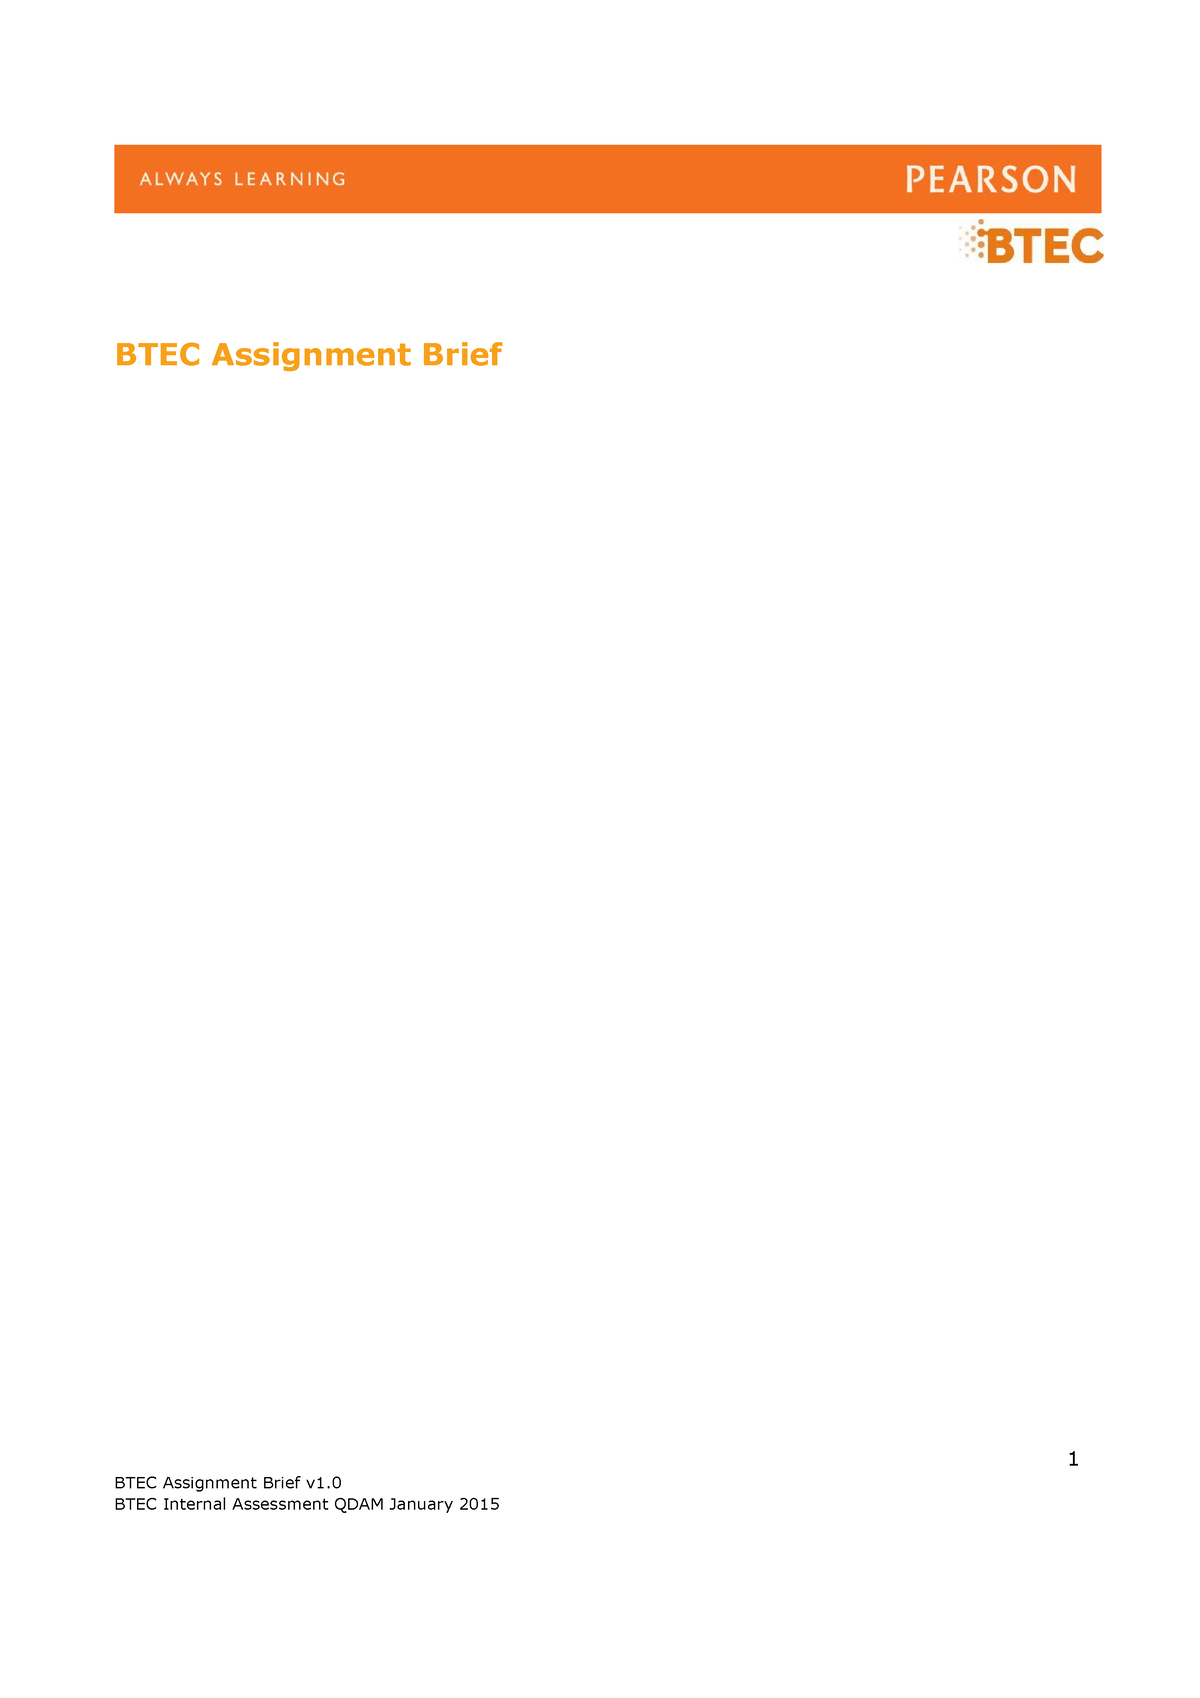 btec assignment brief v1.0